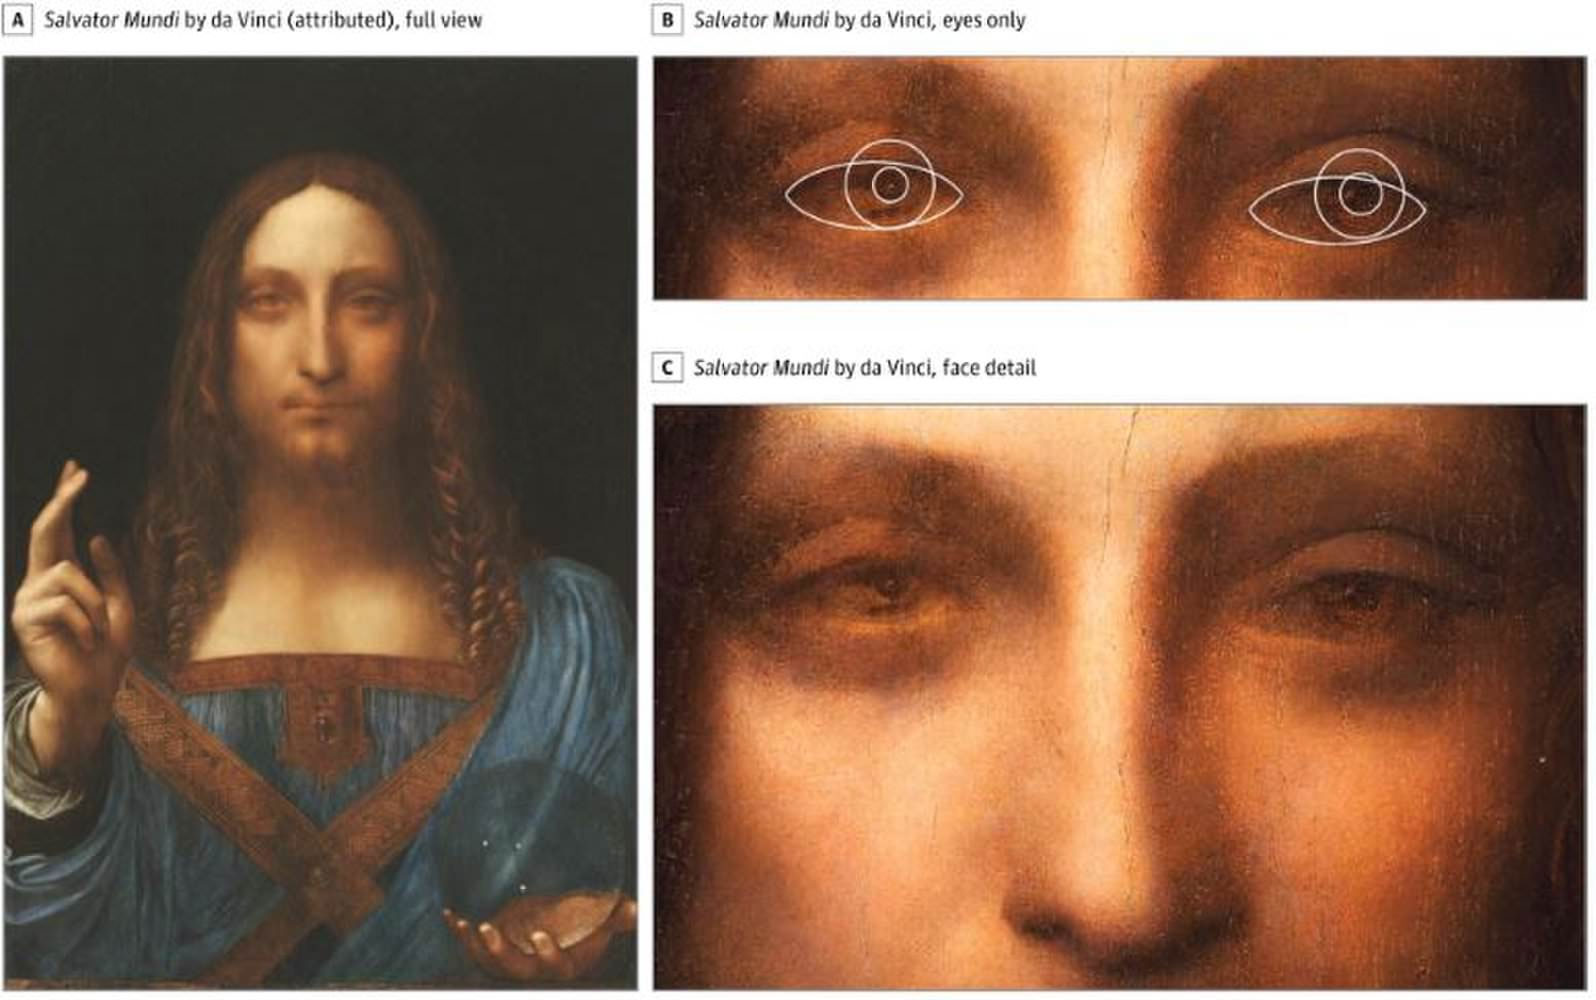 لئوناردو داوینچی | Leonardo da Vinci